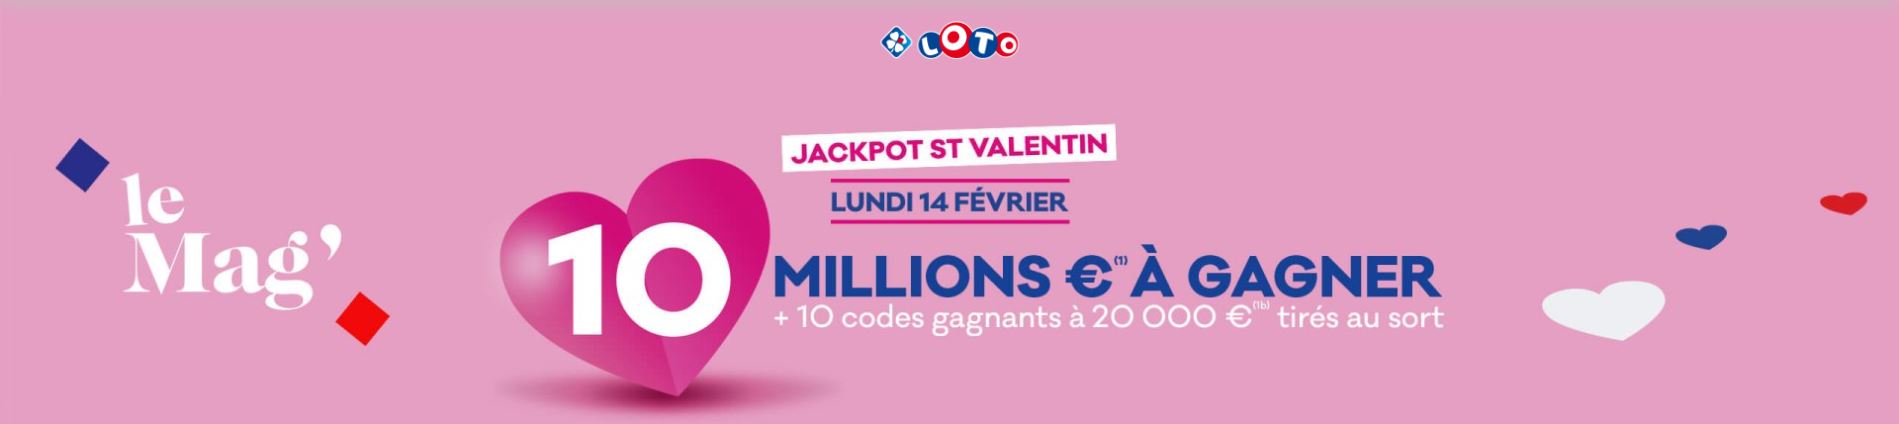 LOTO® Jackpot St Valentin : 10 millions d'euros à gagner + 10 gagnants à 20 000 €